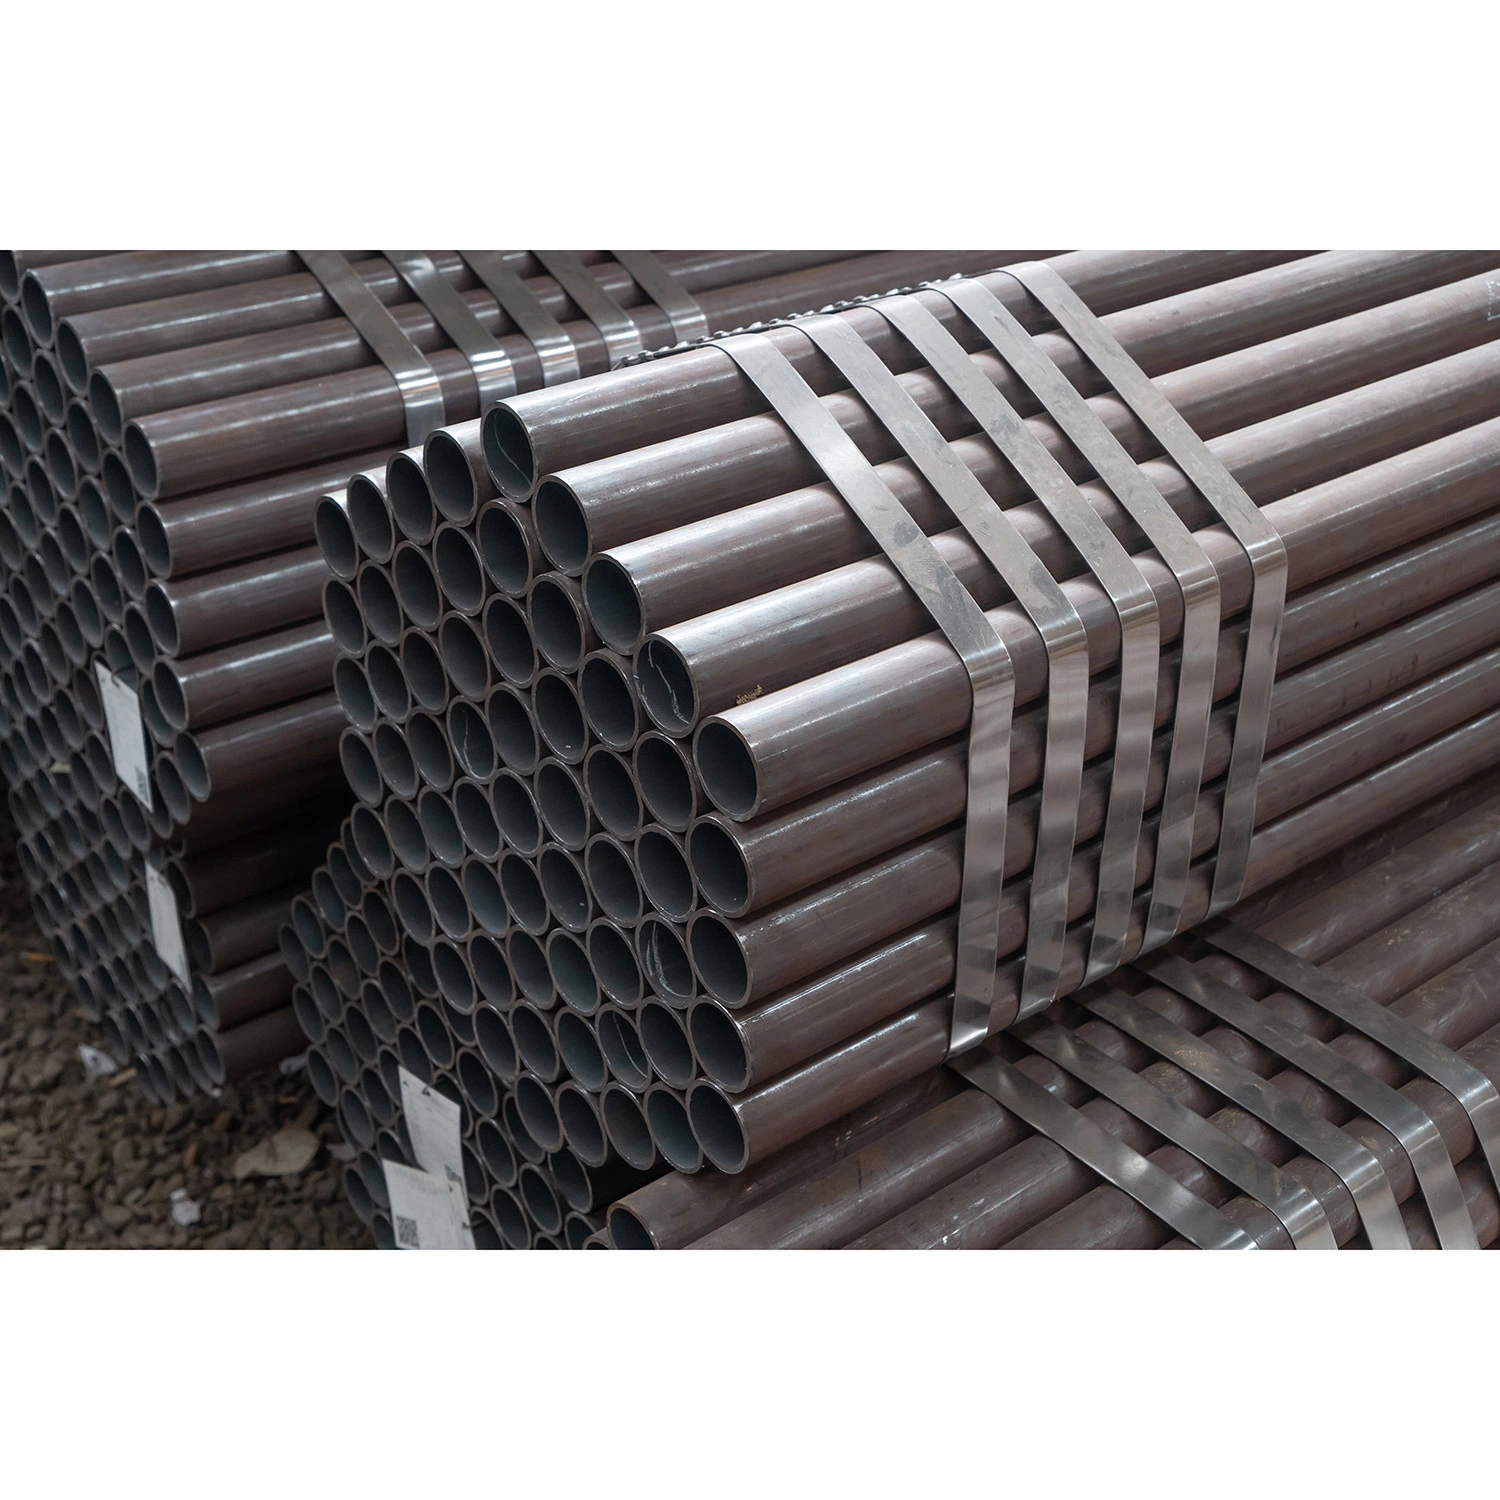 q235 A53 Carbon Stahl nahtlose Rohr nahtlose Stahlrohr Erw Stahlrohr ASTM API 5L ERW Stahlrohr hohe Qualität Benutzerdefinierte Hohe Festigkeit